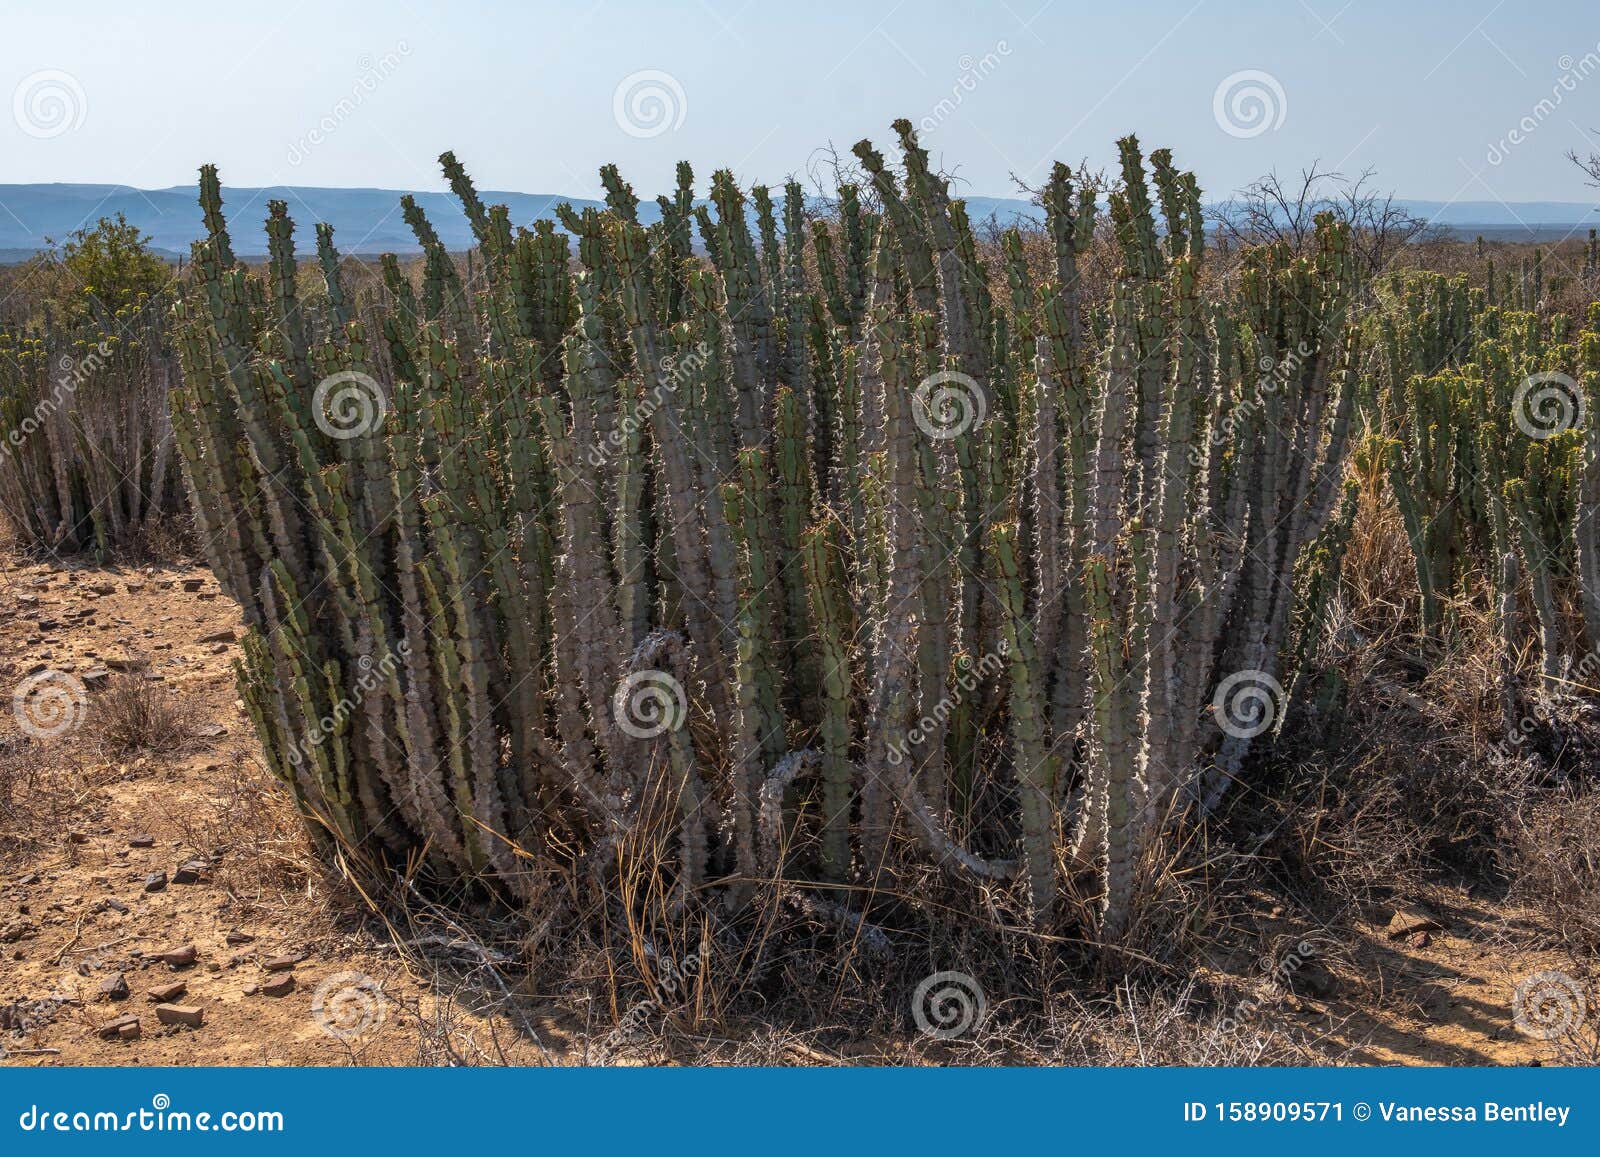 ik ontbijt Elke week aanval Noors Plants or Euphorbia Jansenvillensis of the Karoo Stock Image - Image  of arid, cape: 158909571